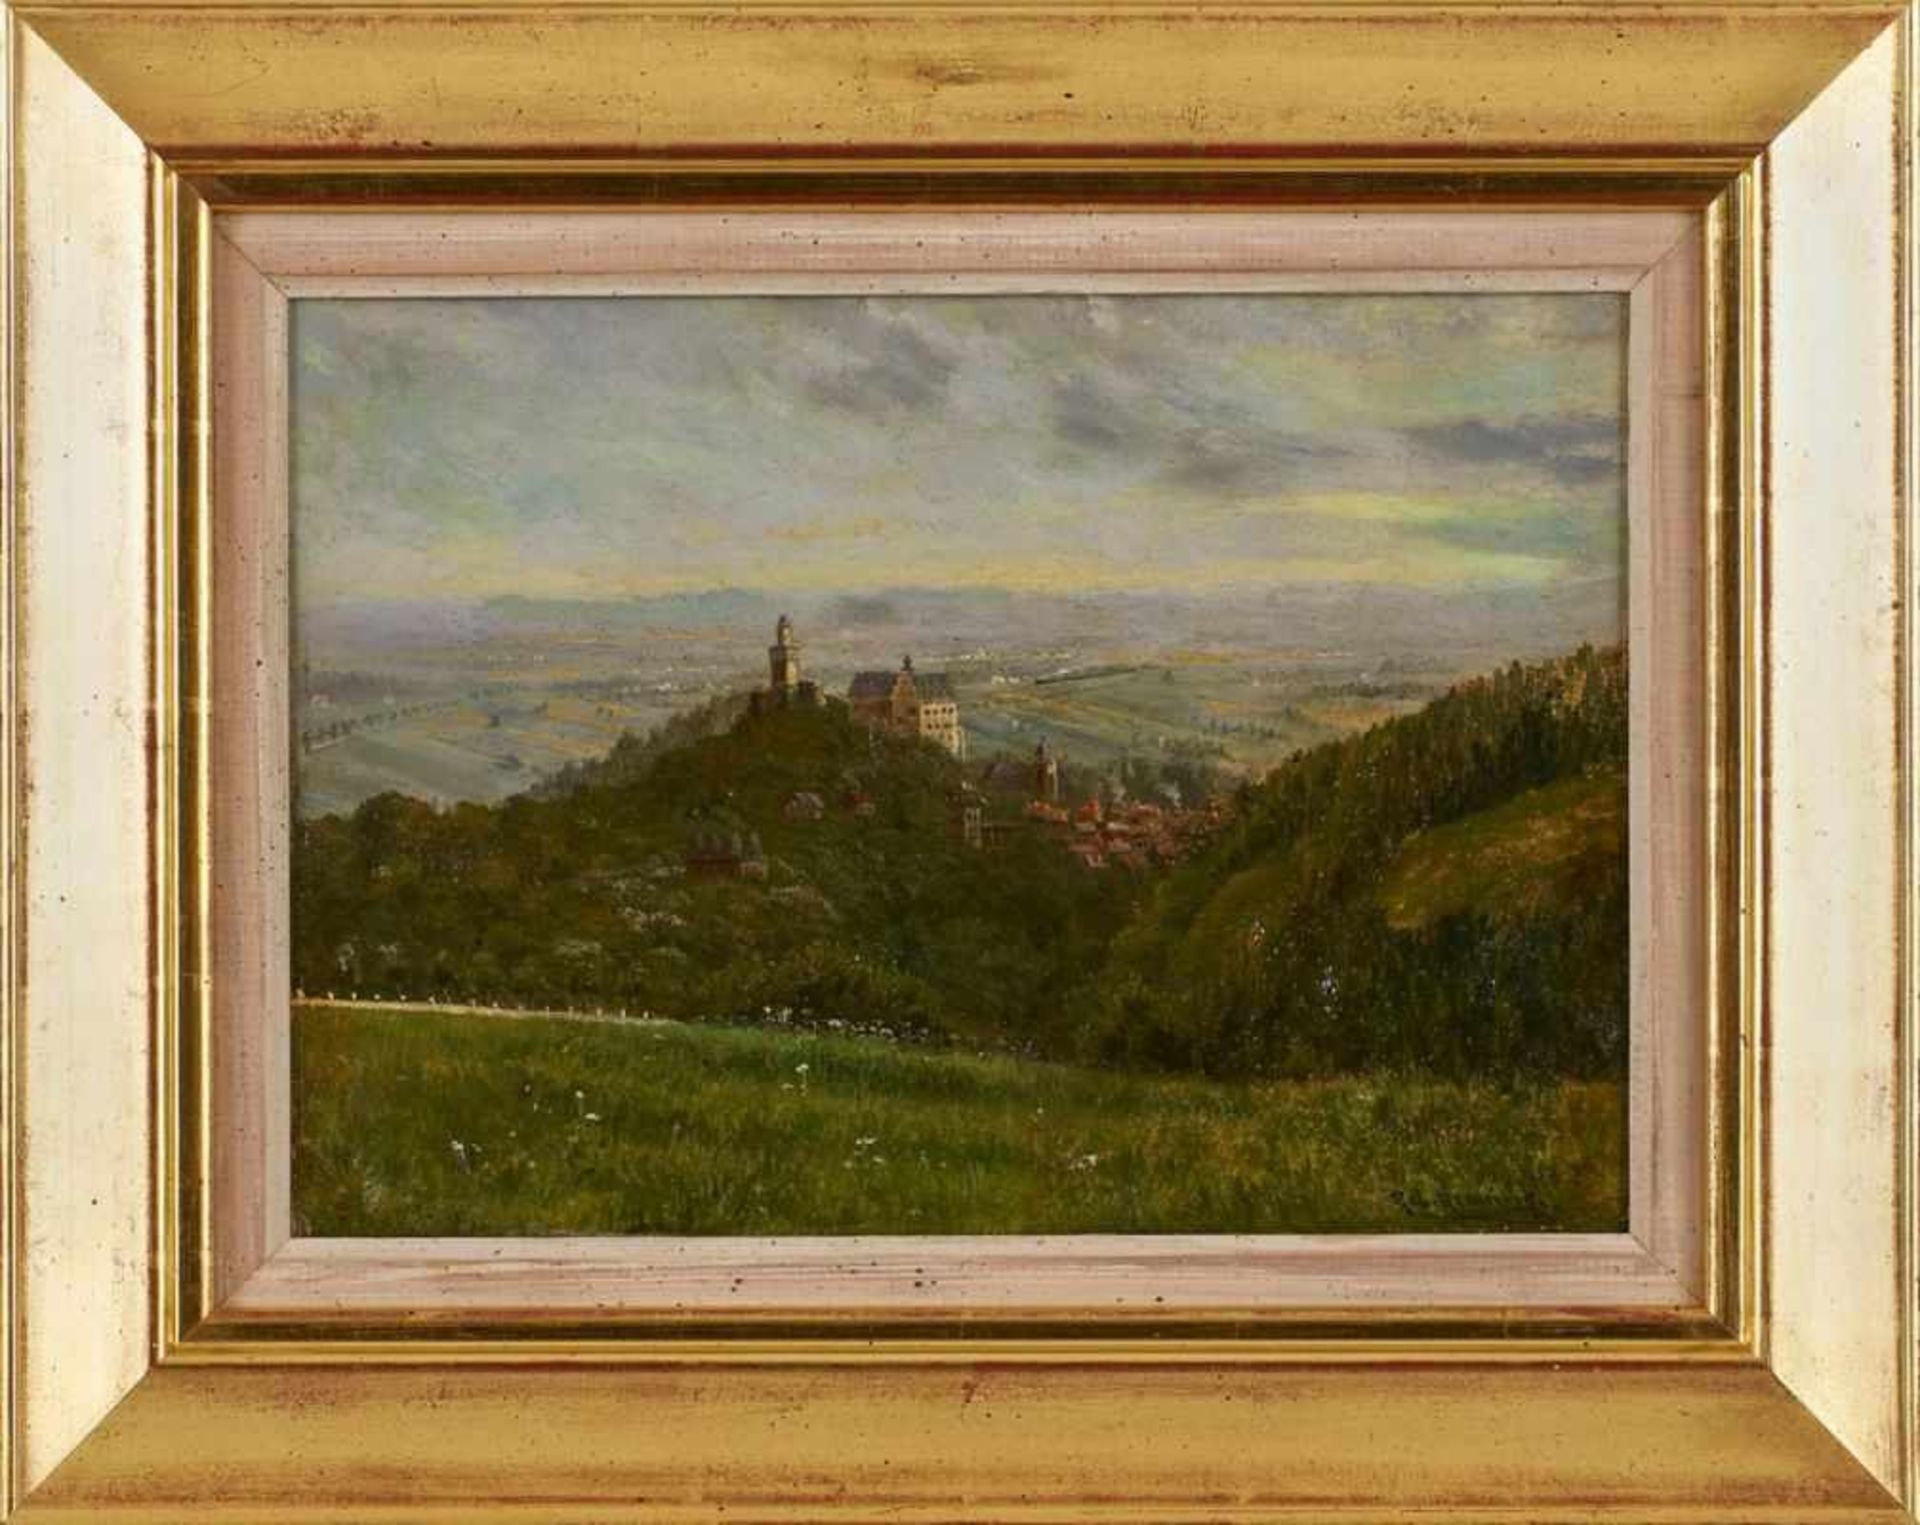 Gemälde Robert Henning 1875 Frankfurt, gest. 1930 "Kronberg mit Dampfeisenbahn in der Ebene" u.